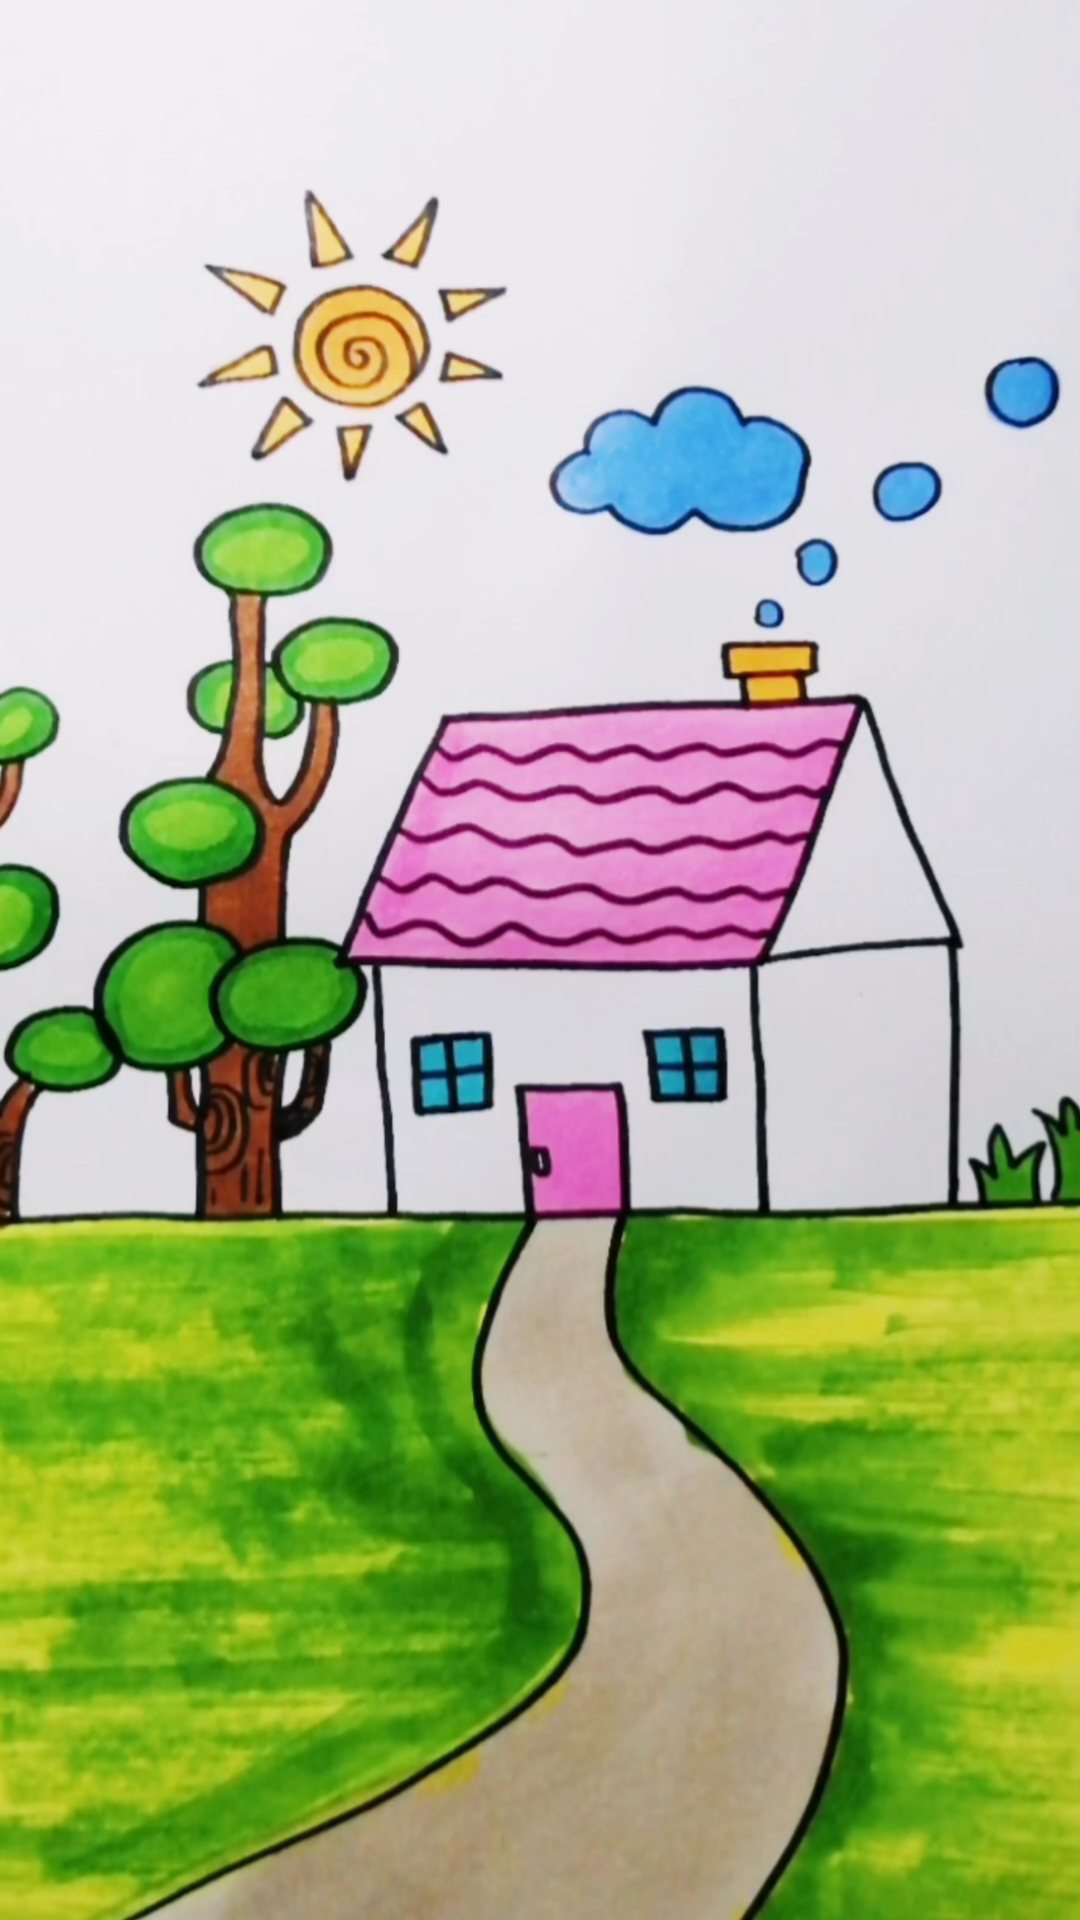 风景画小房子怎么画图片